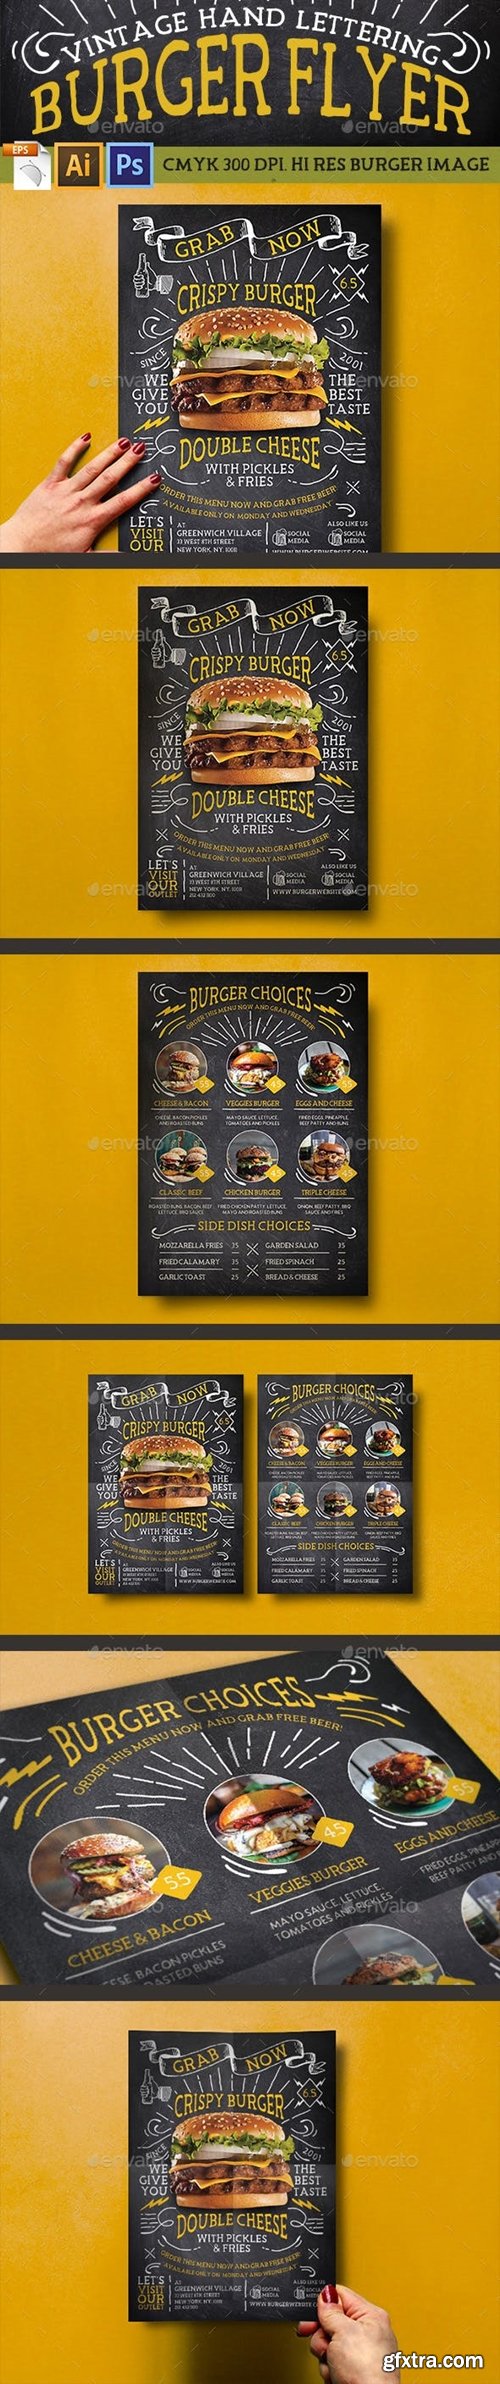 Graphicriver - Vintage Hand Lettering Burger Flyer 16105285